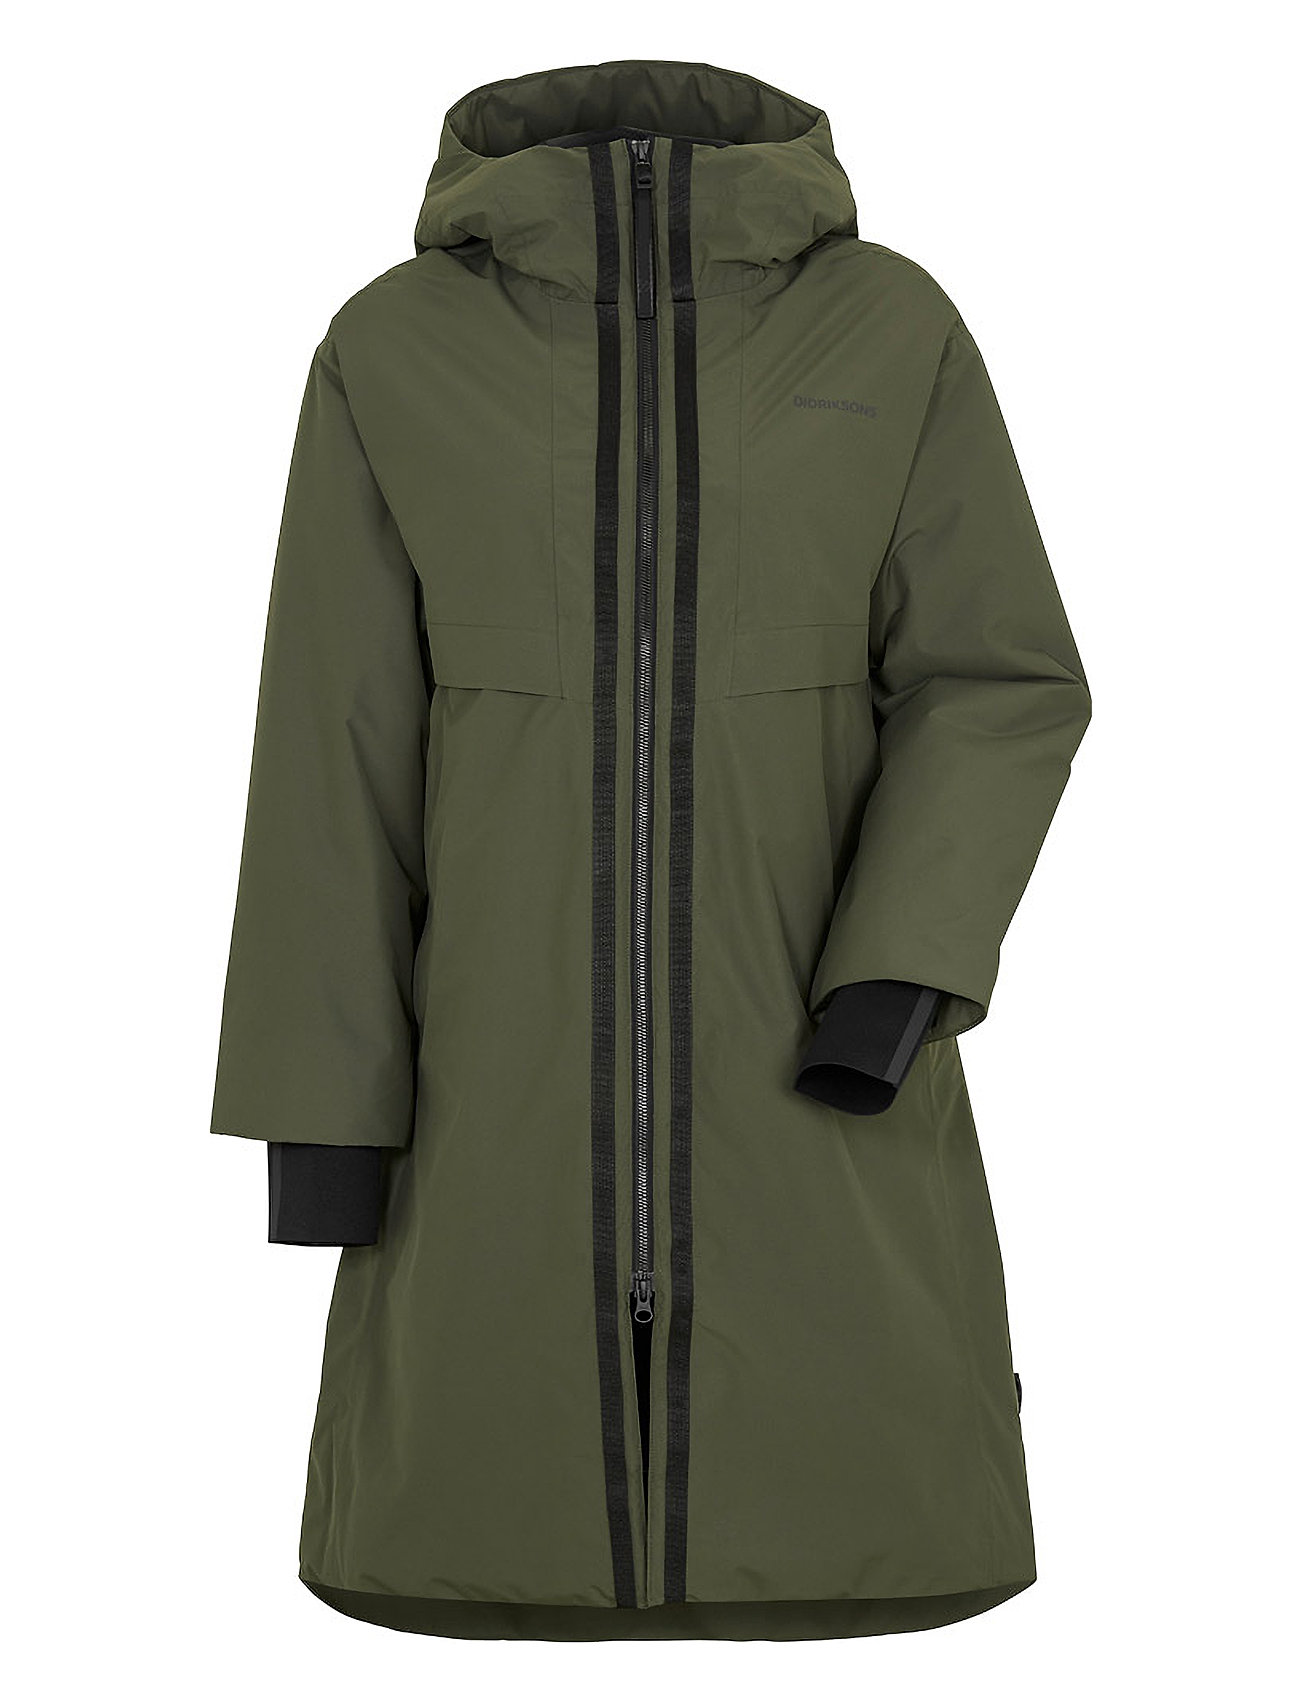 Aino – Wns Didriksons – coats & Booztlet shop jackets 4 Parka at